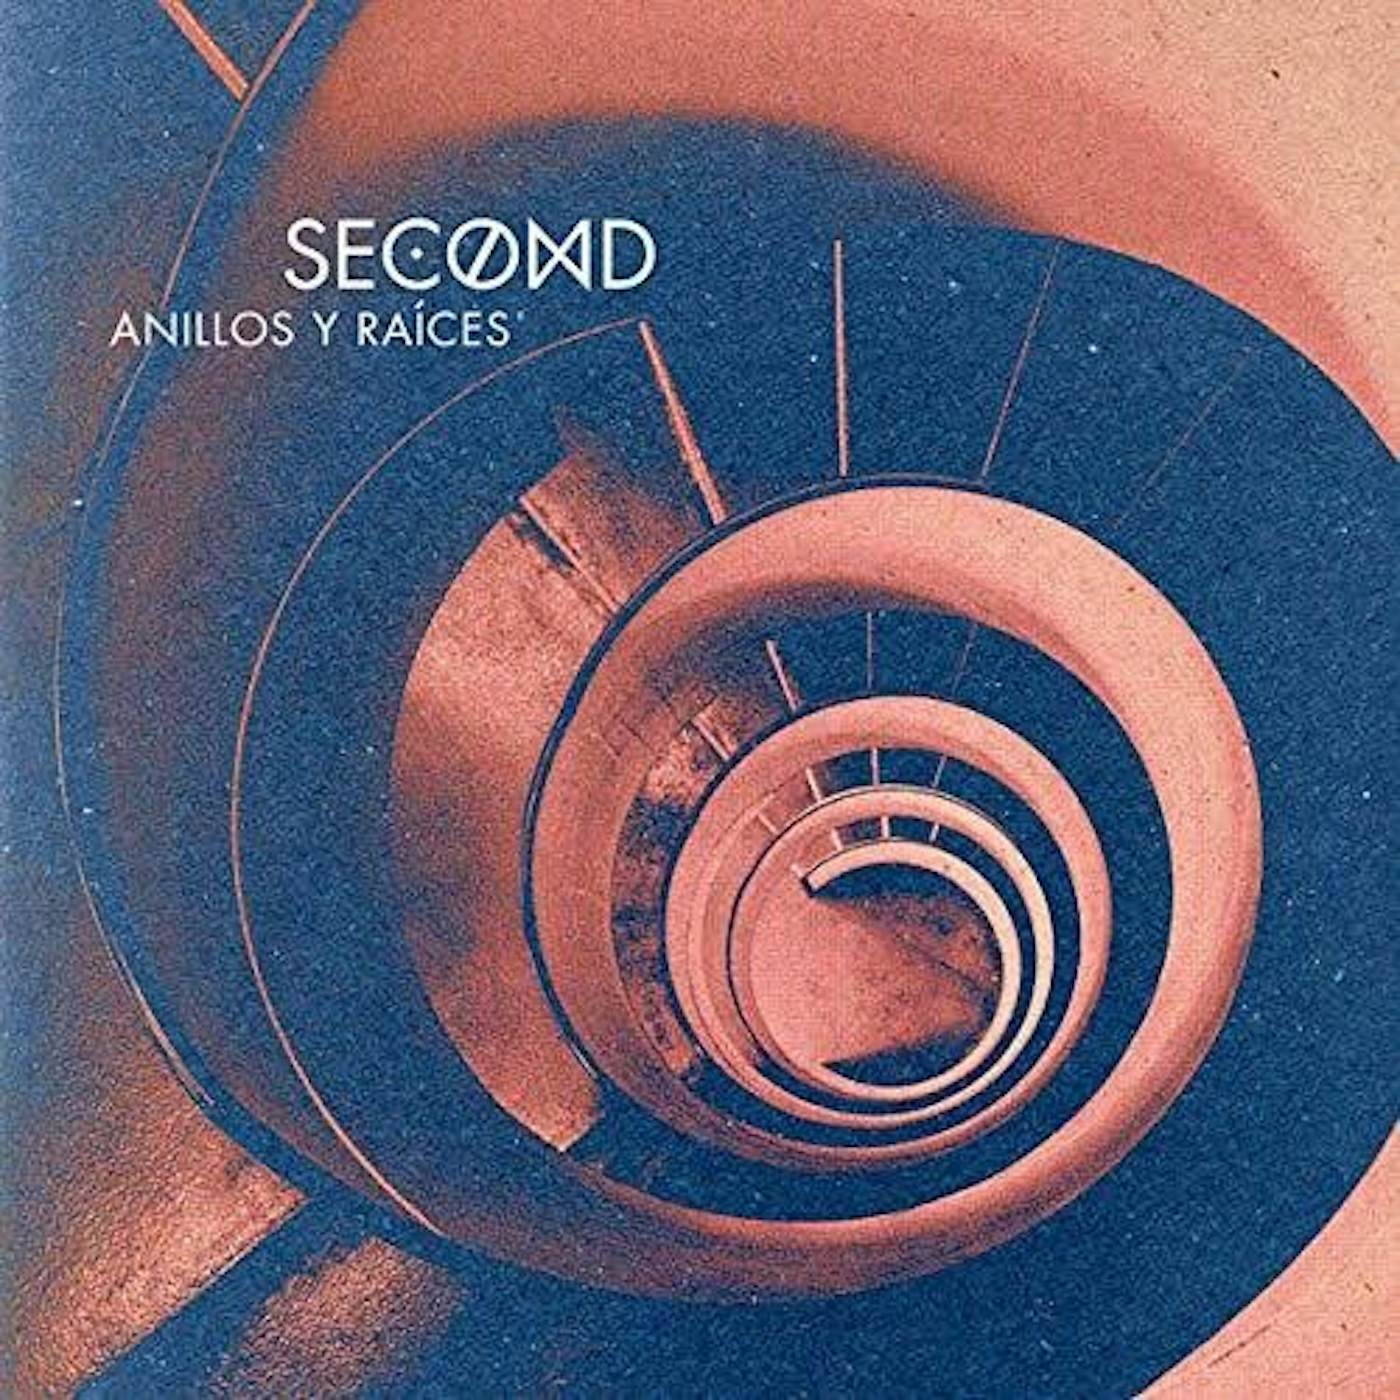 Second ANILLOS Y RAICES Vinyl Record